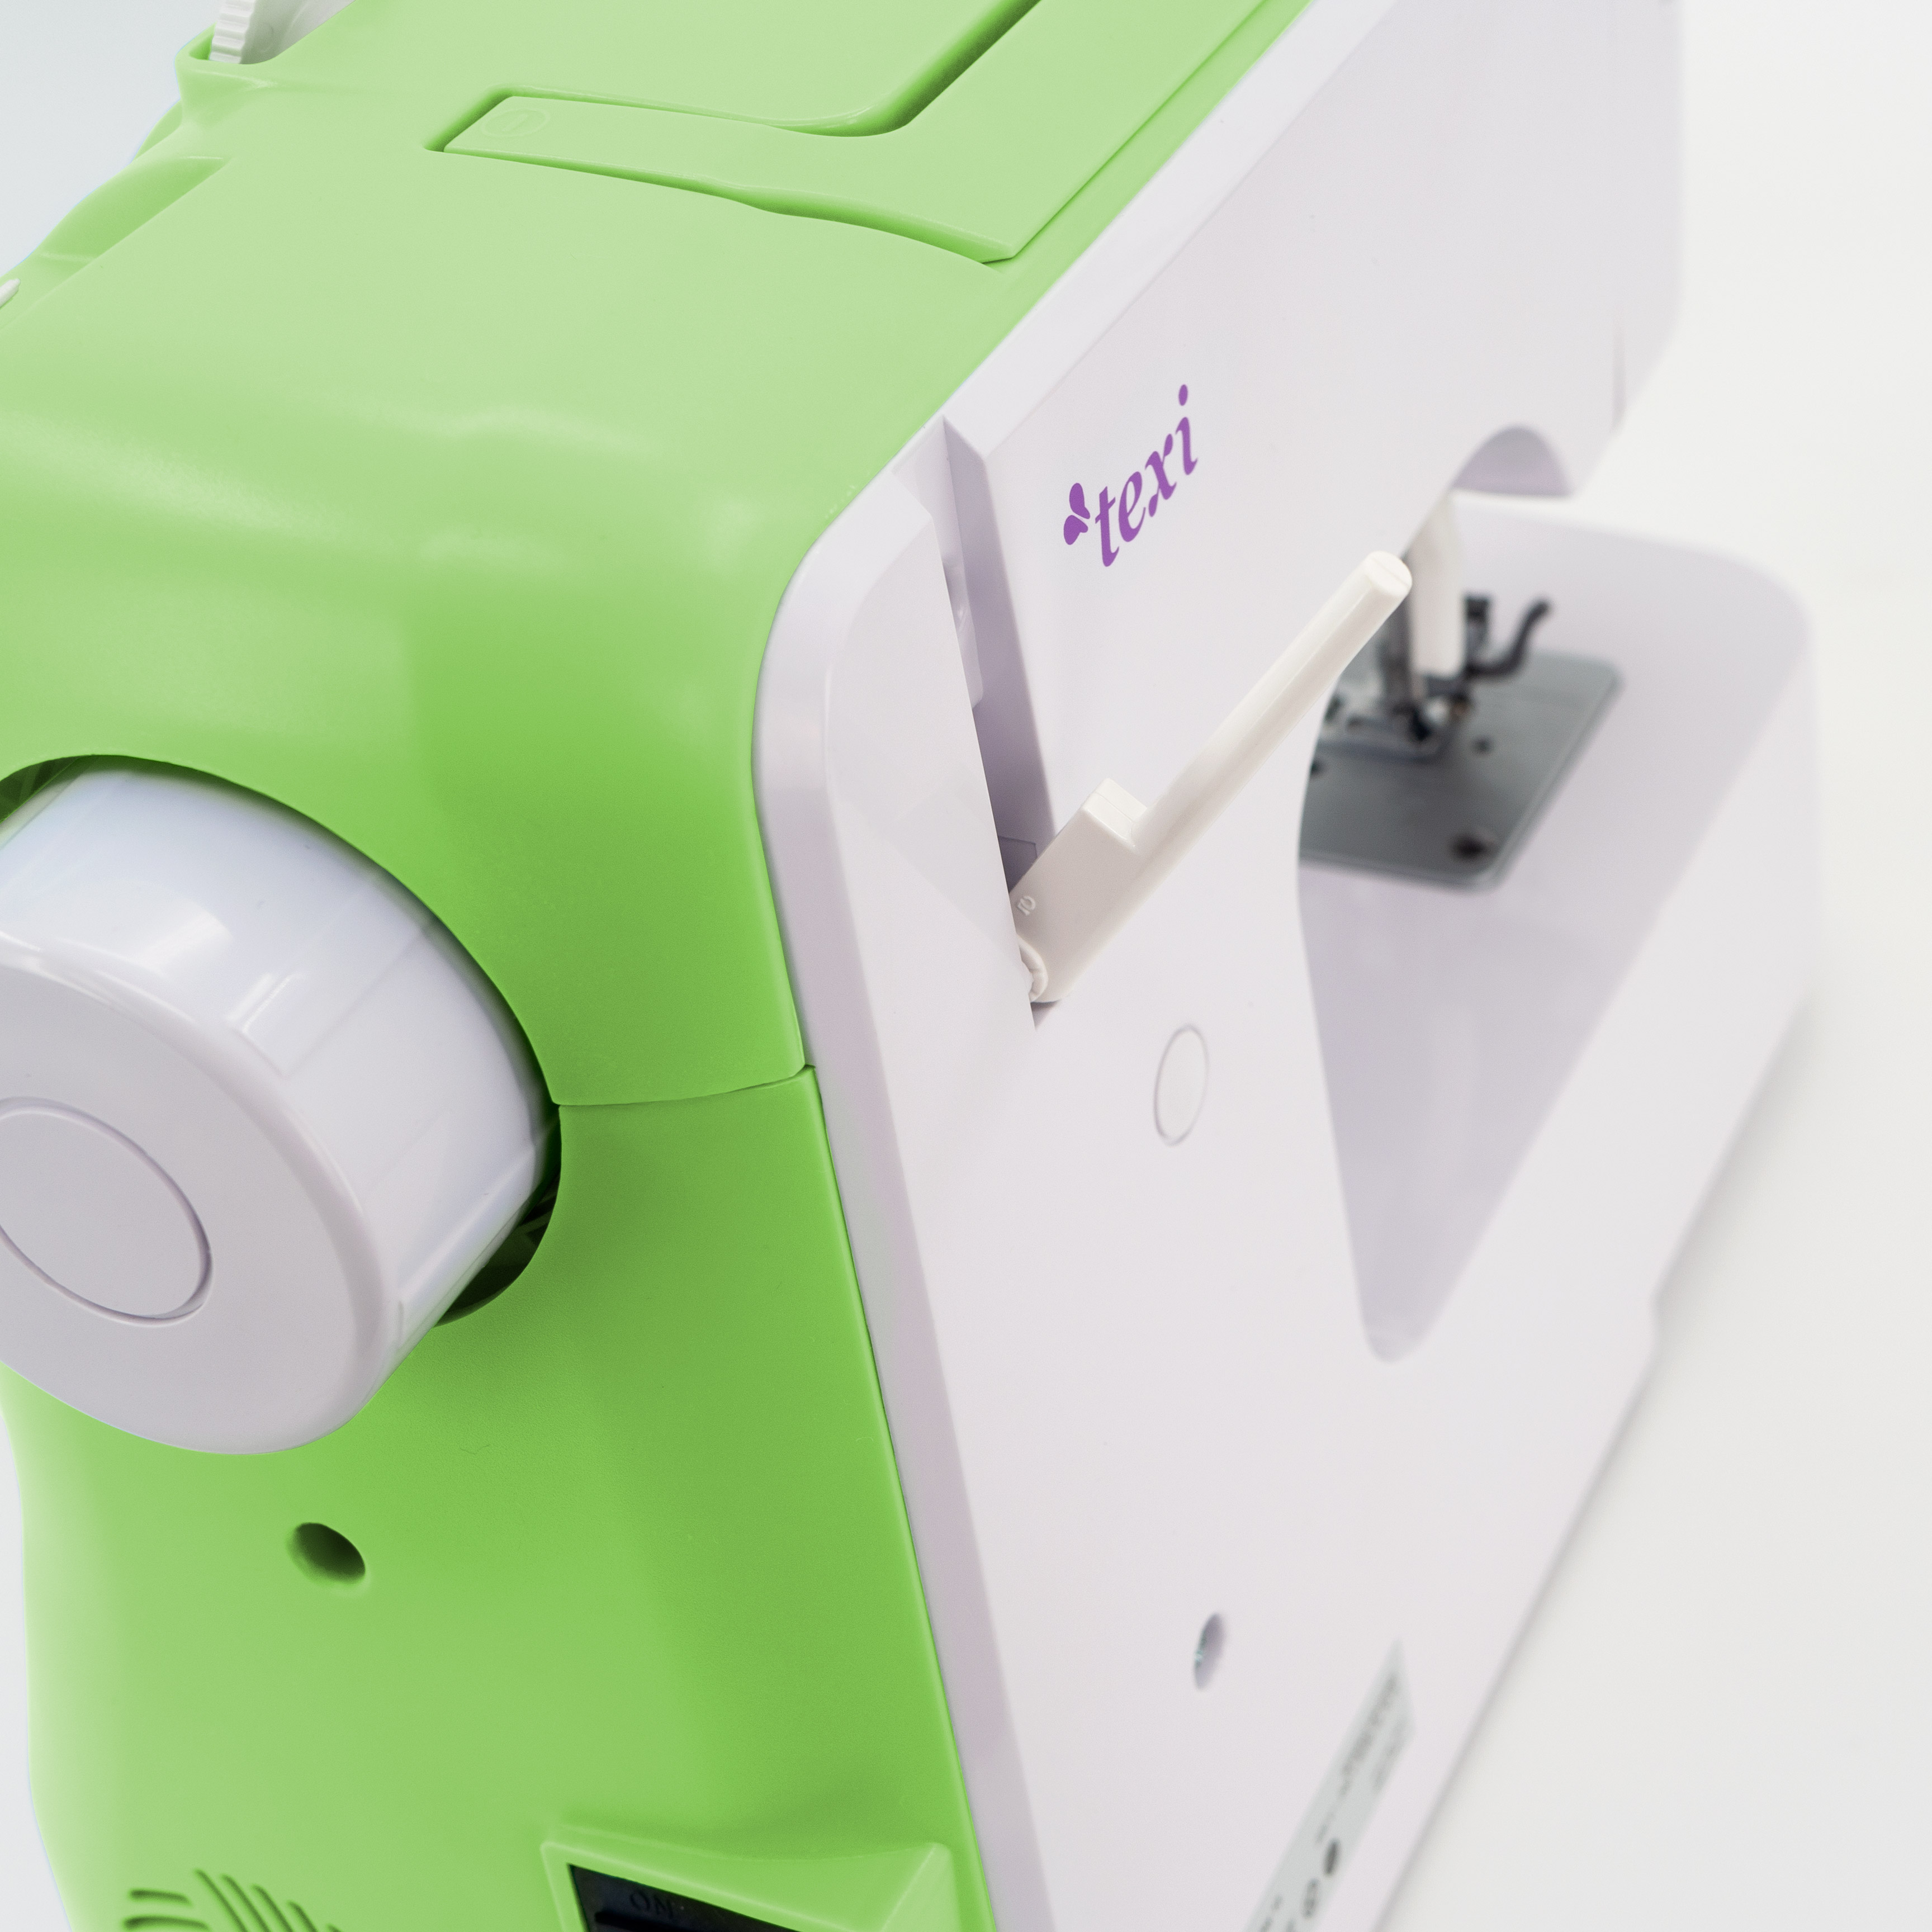 Automatic multifunctional sewing machine, 13 stitches